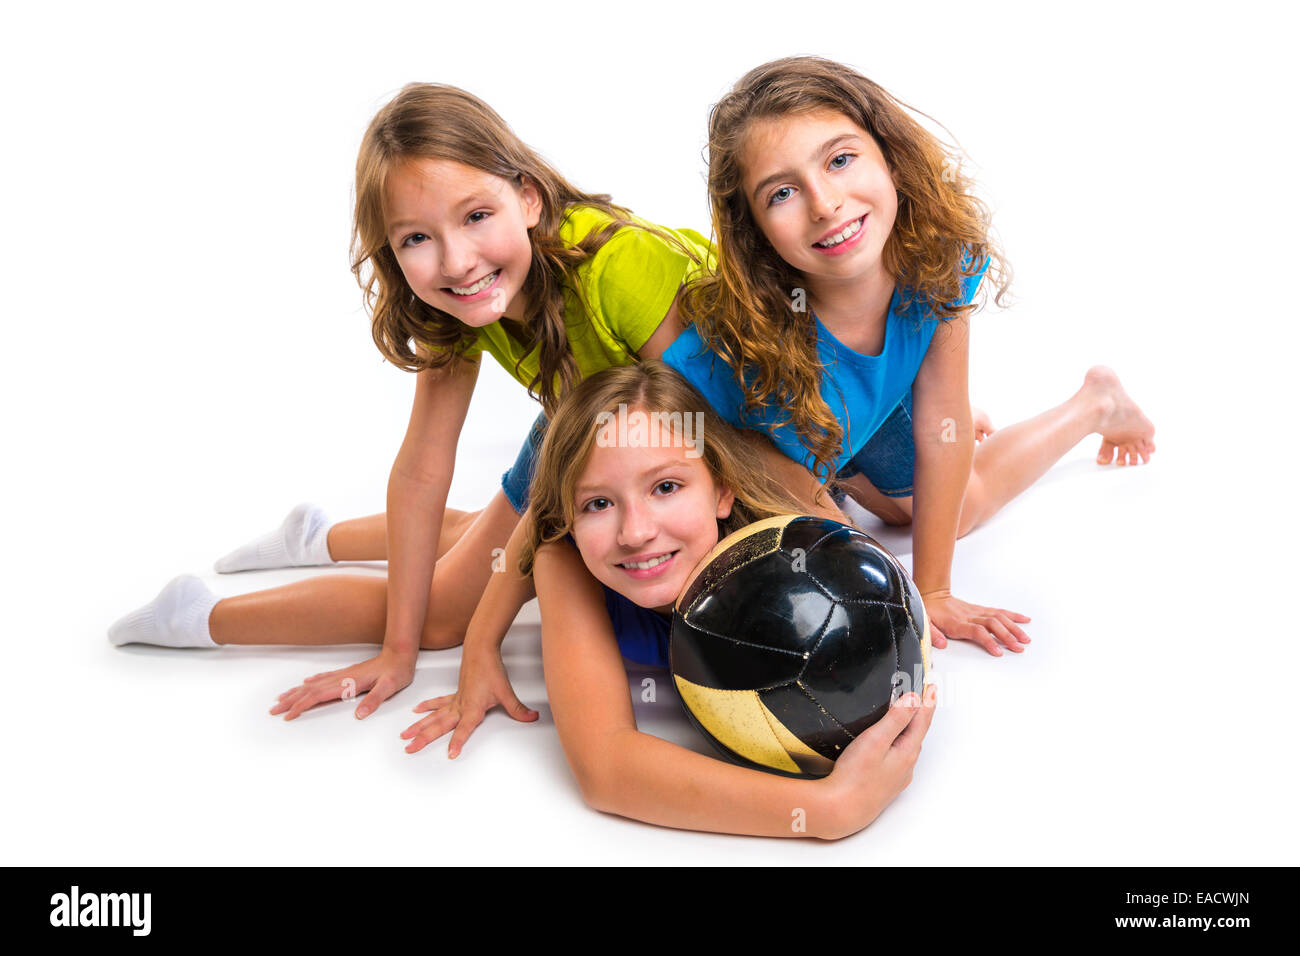 Fußball-Fußball-Mädchen team Porträt mit Ball auf weißem Hintergrund Stockfoto